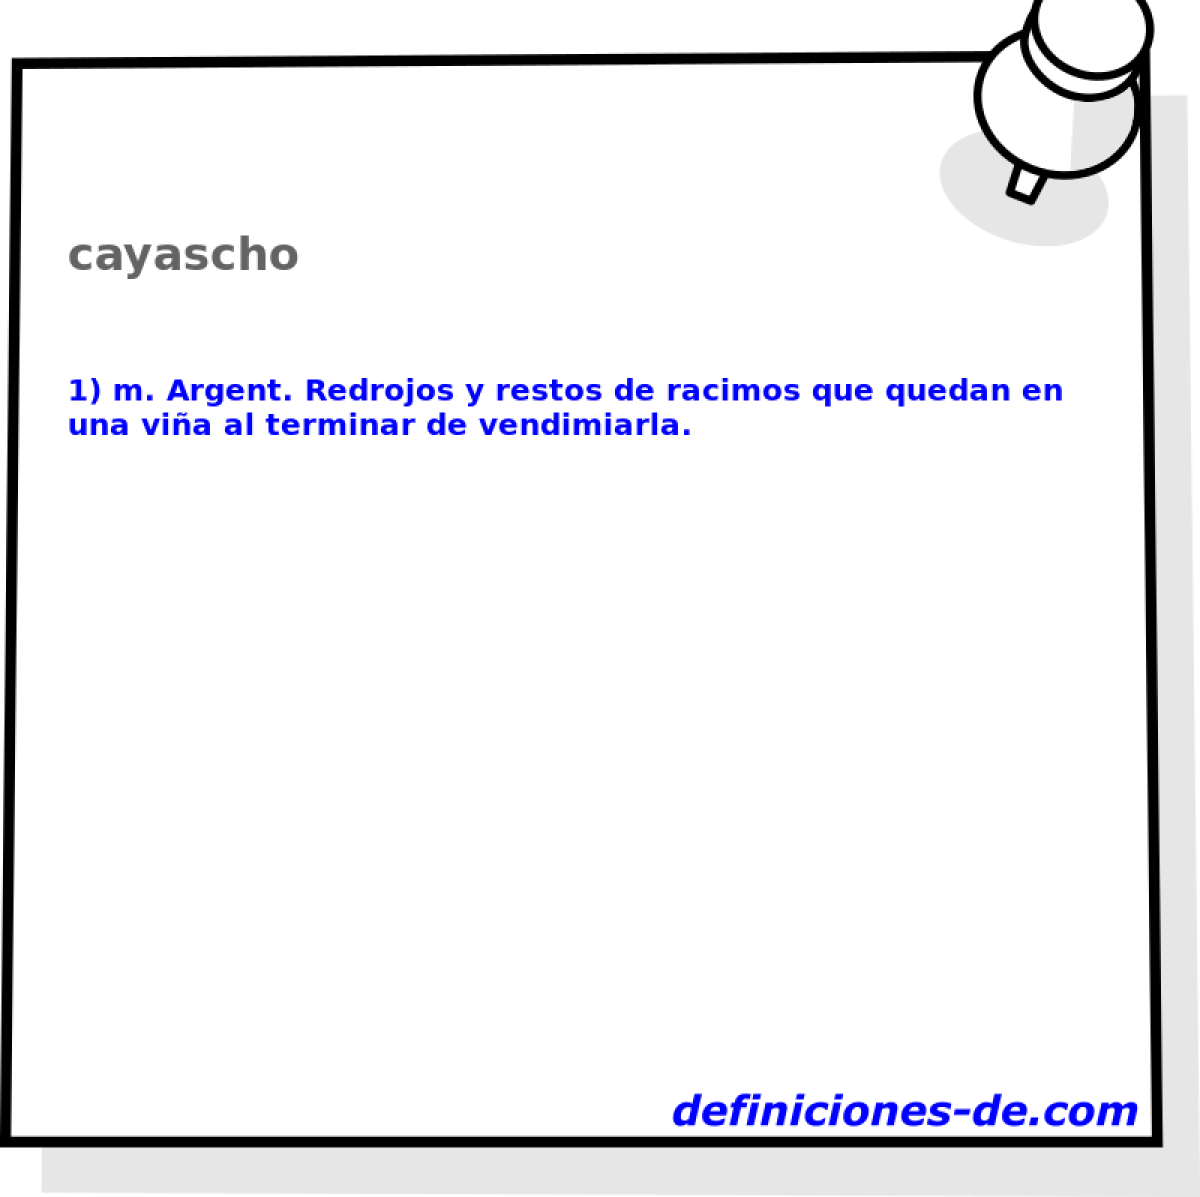 cayascho 